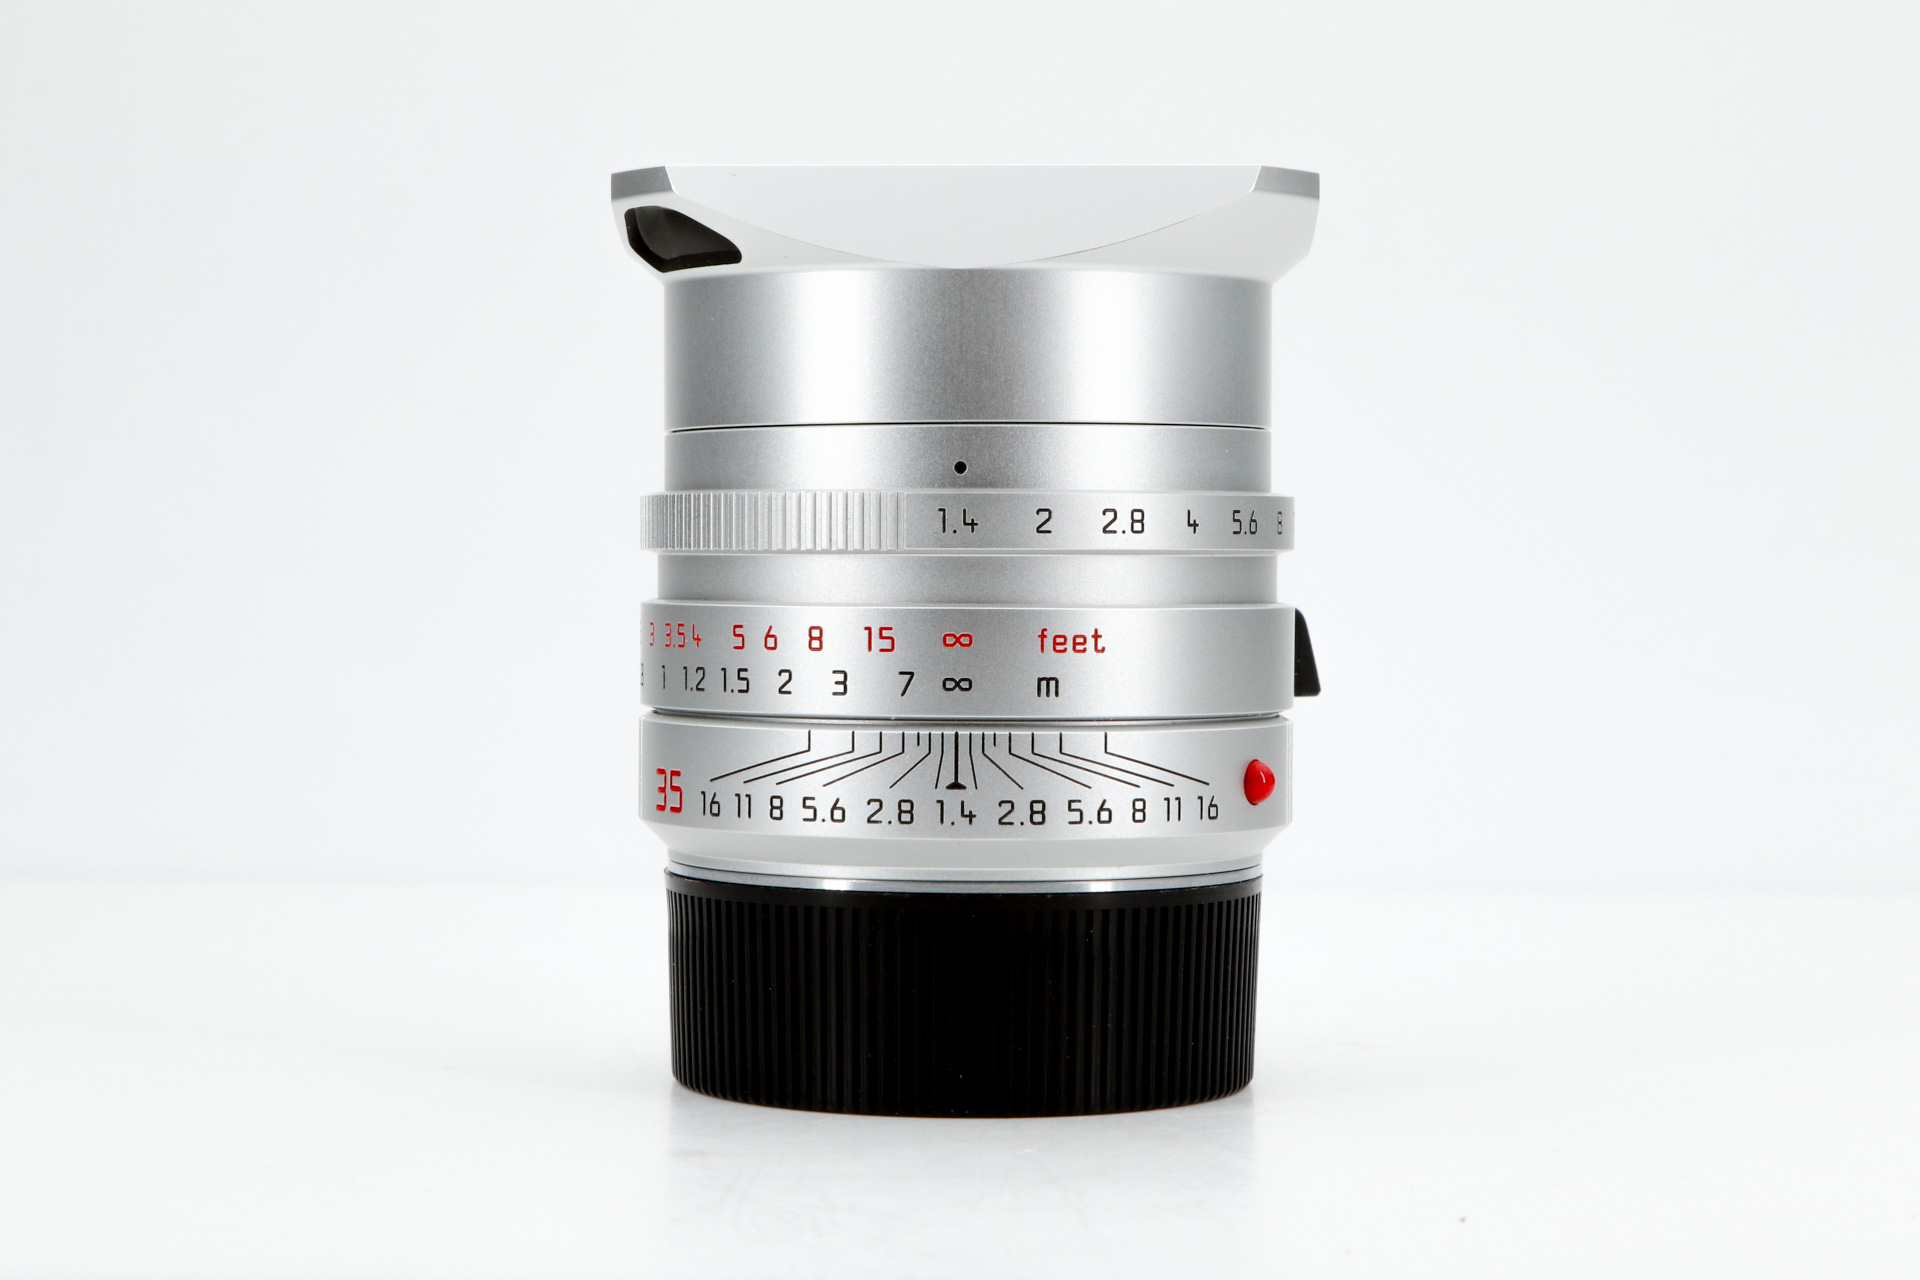 LEICA SUMMILUX-M 1.4/35mm ASPH., silver, Original Packaging